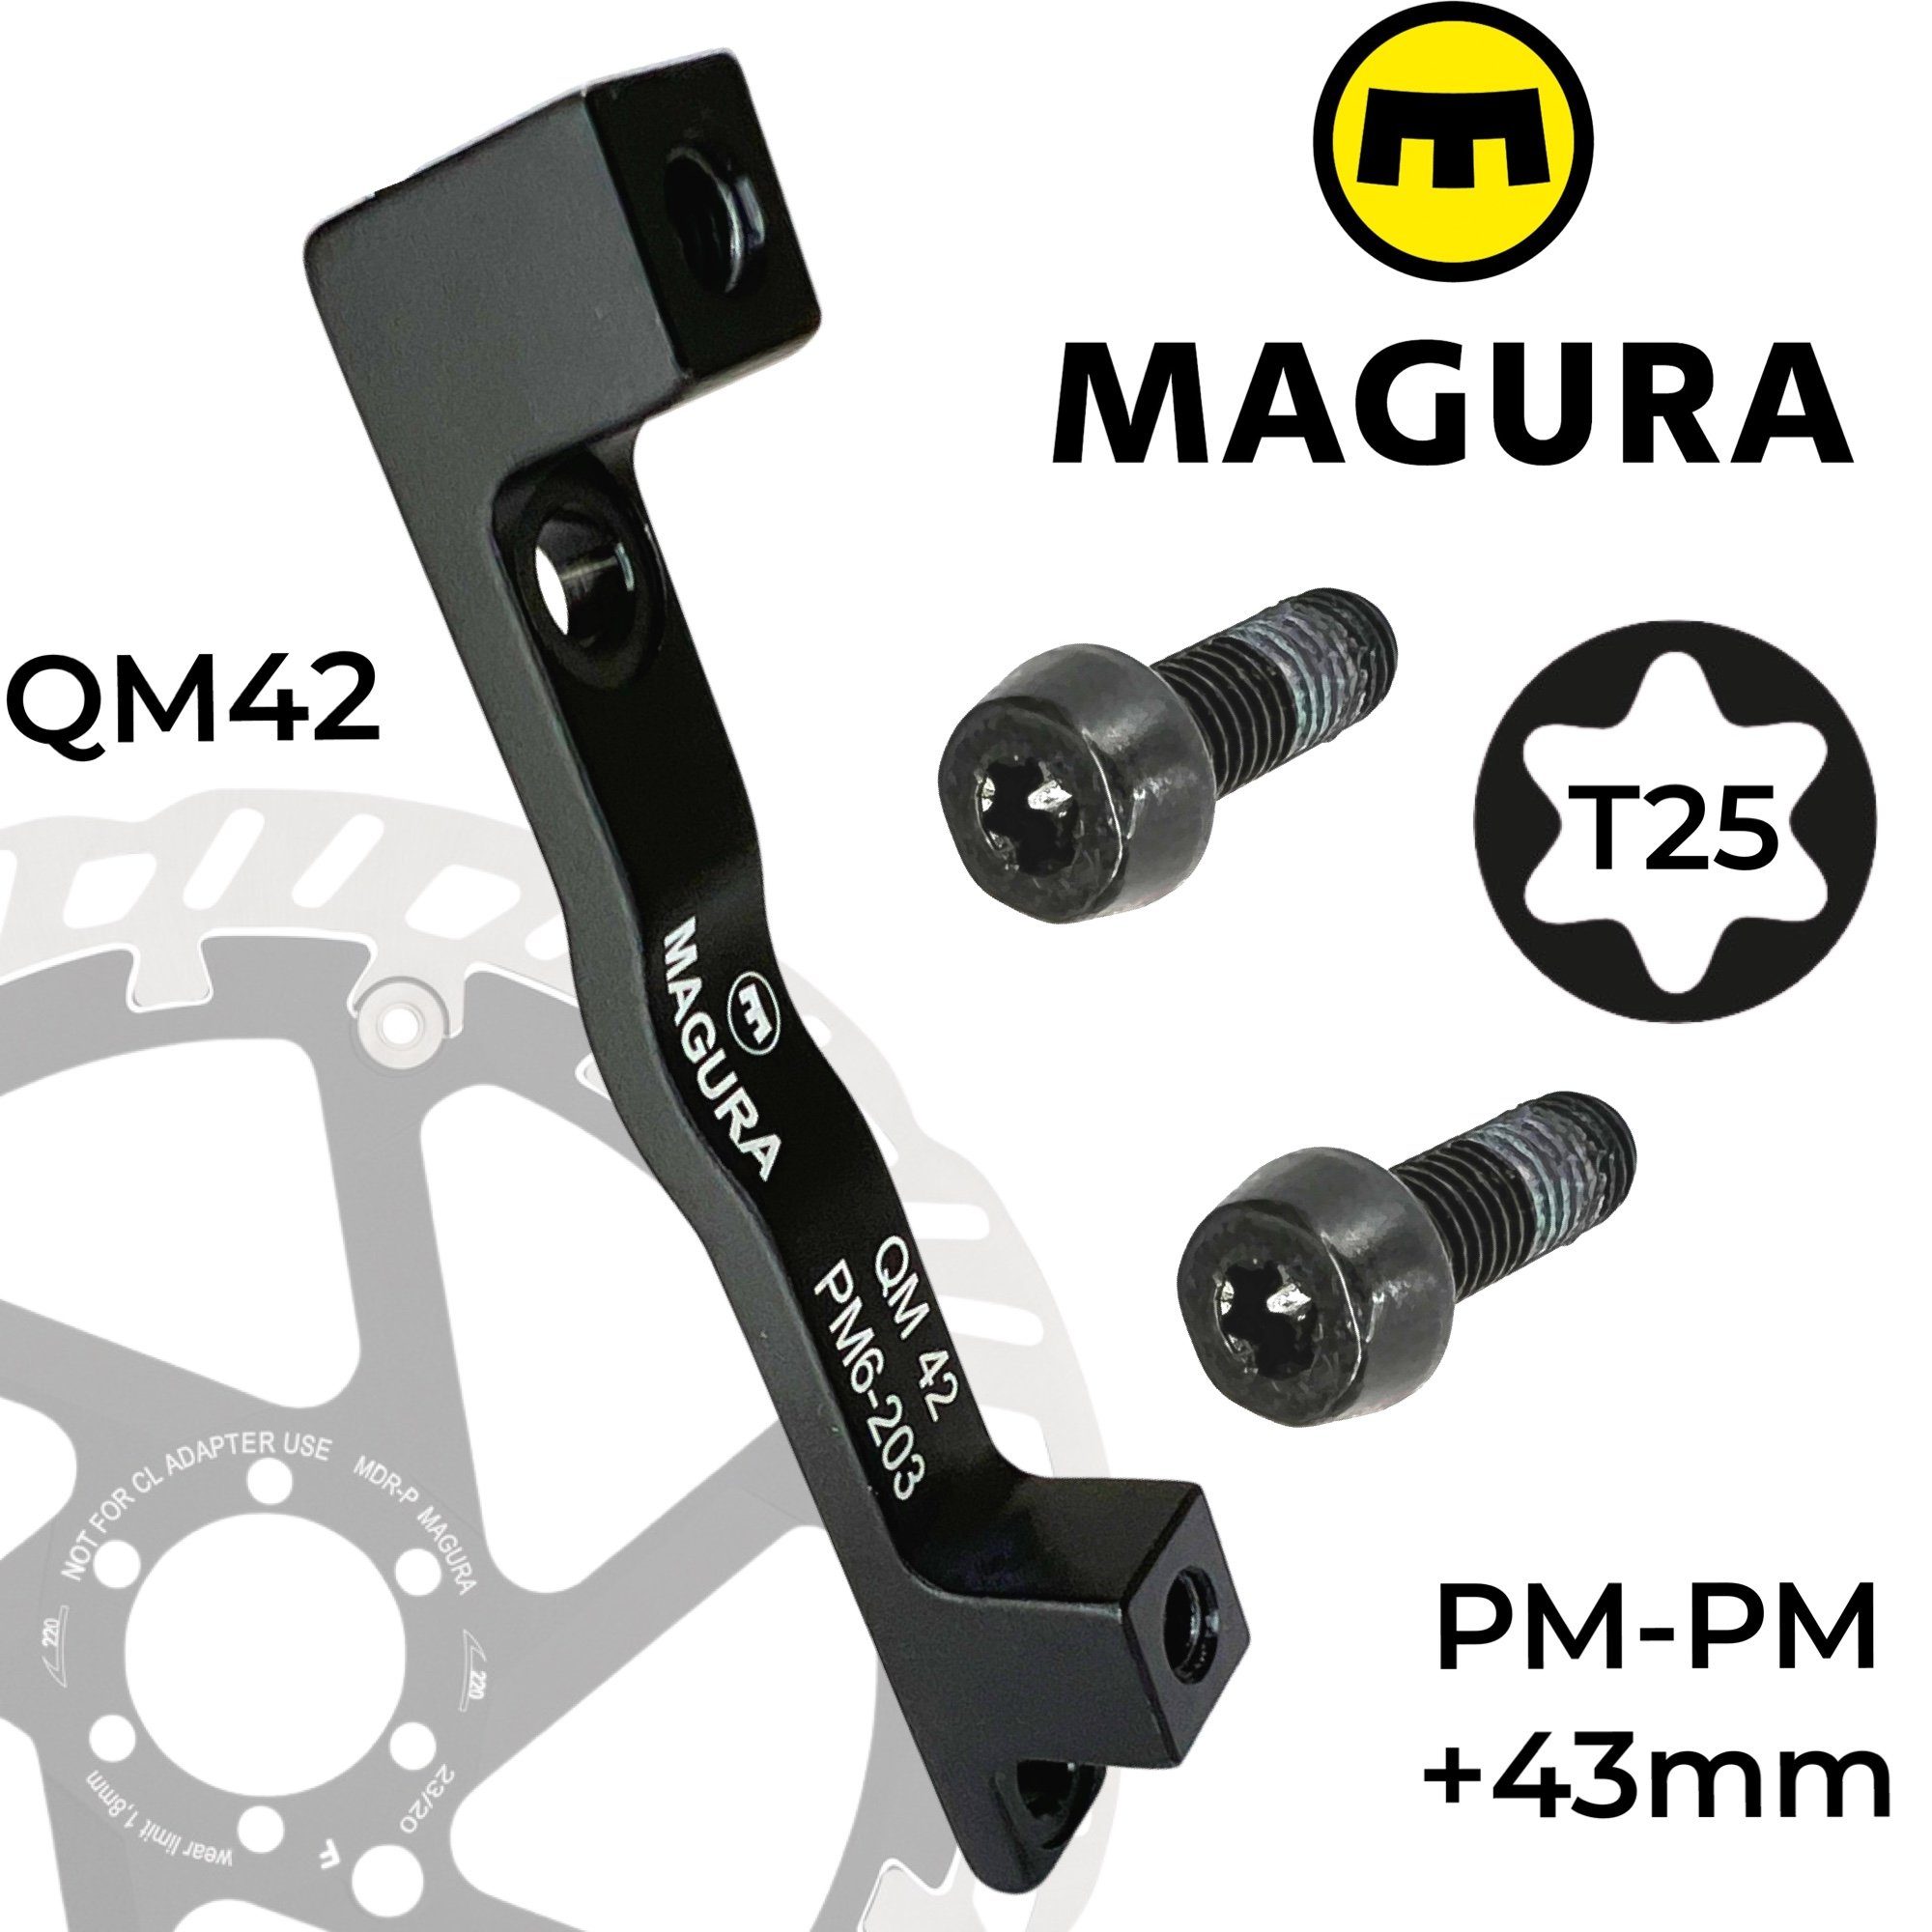 Magura Scheibenbremse Magura Bremsscheiben Adapter QM42 PM 160-203 +43mm